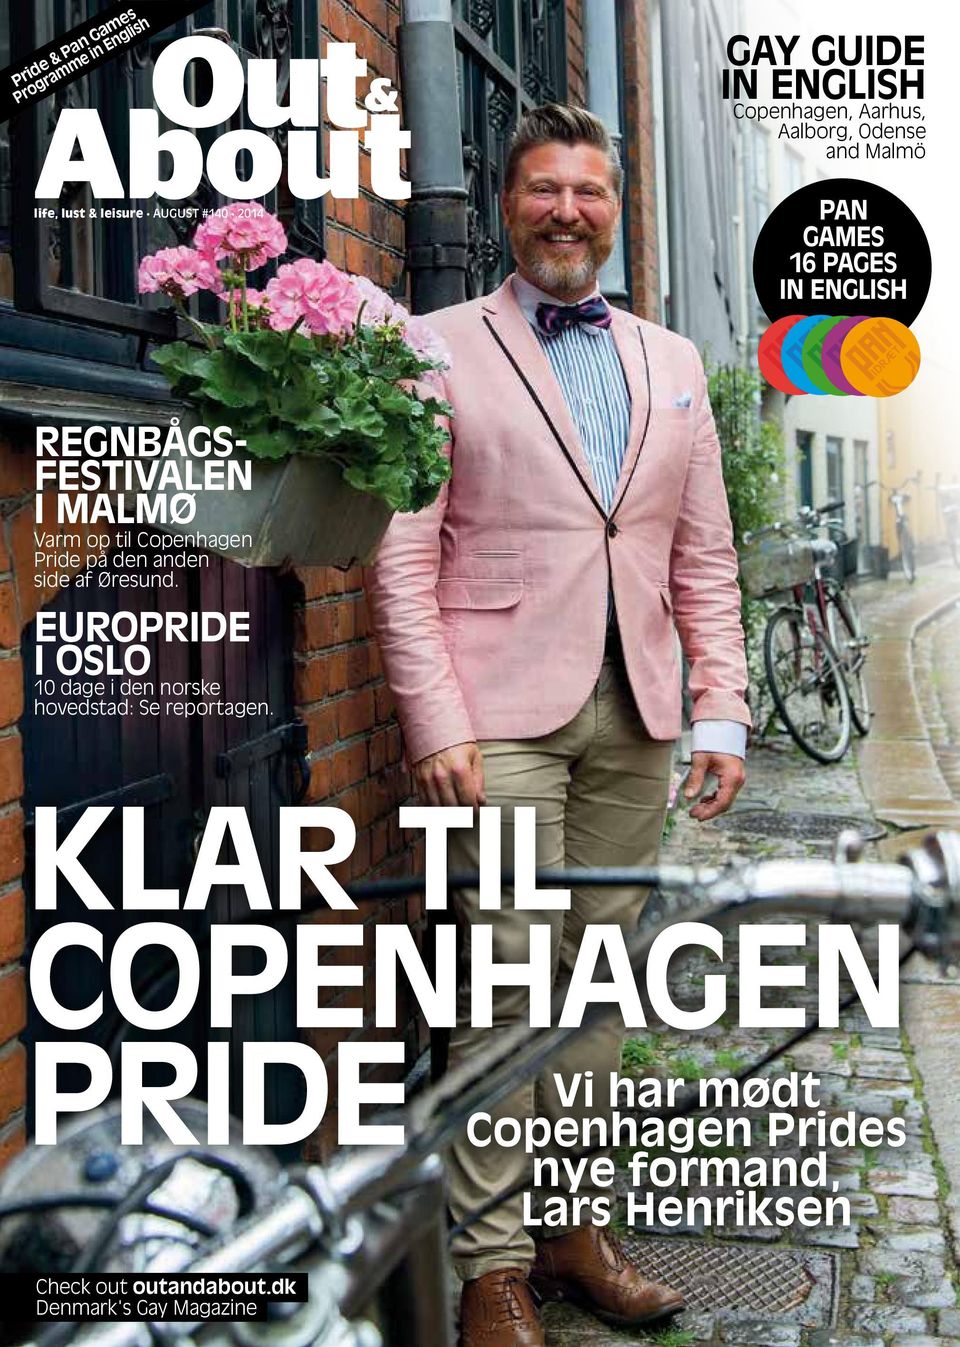 Pride på den anden side af Øresund. EUROPRIDE I OSLO 10 dage i den norske hovedstad: Se reportagen.